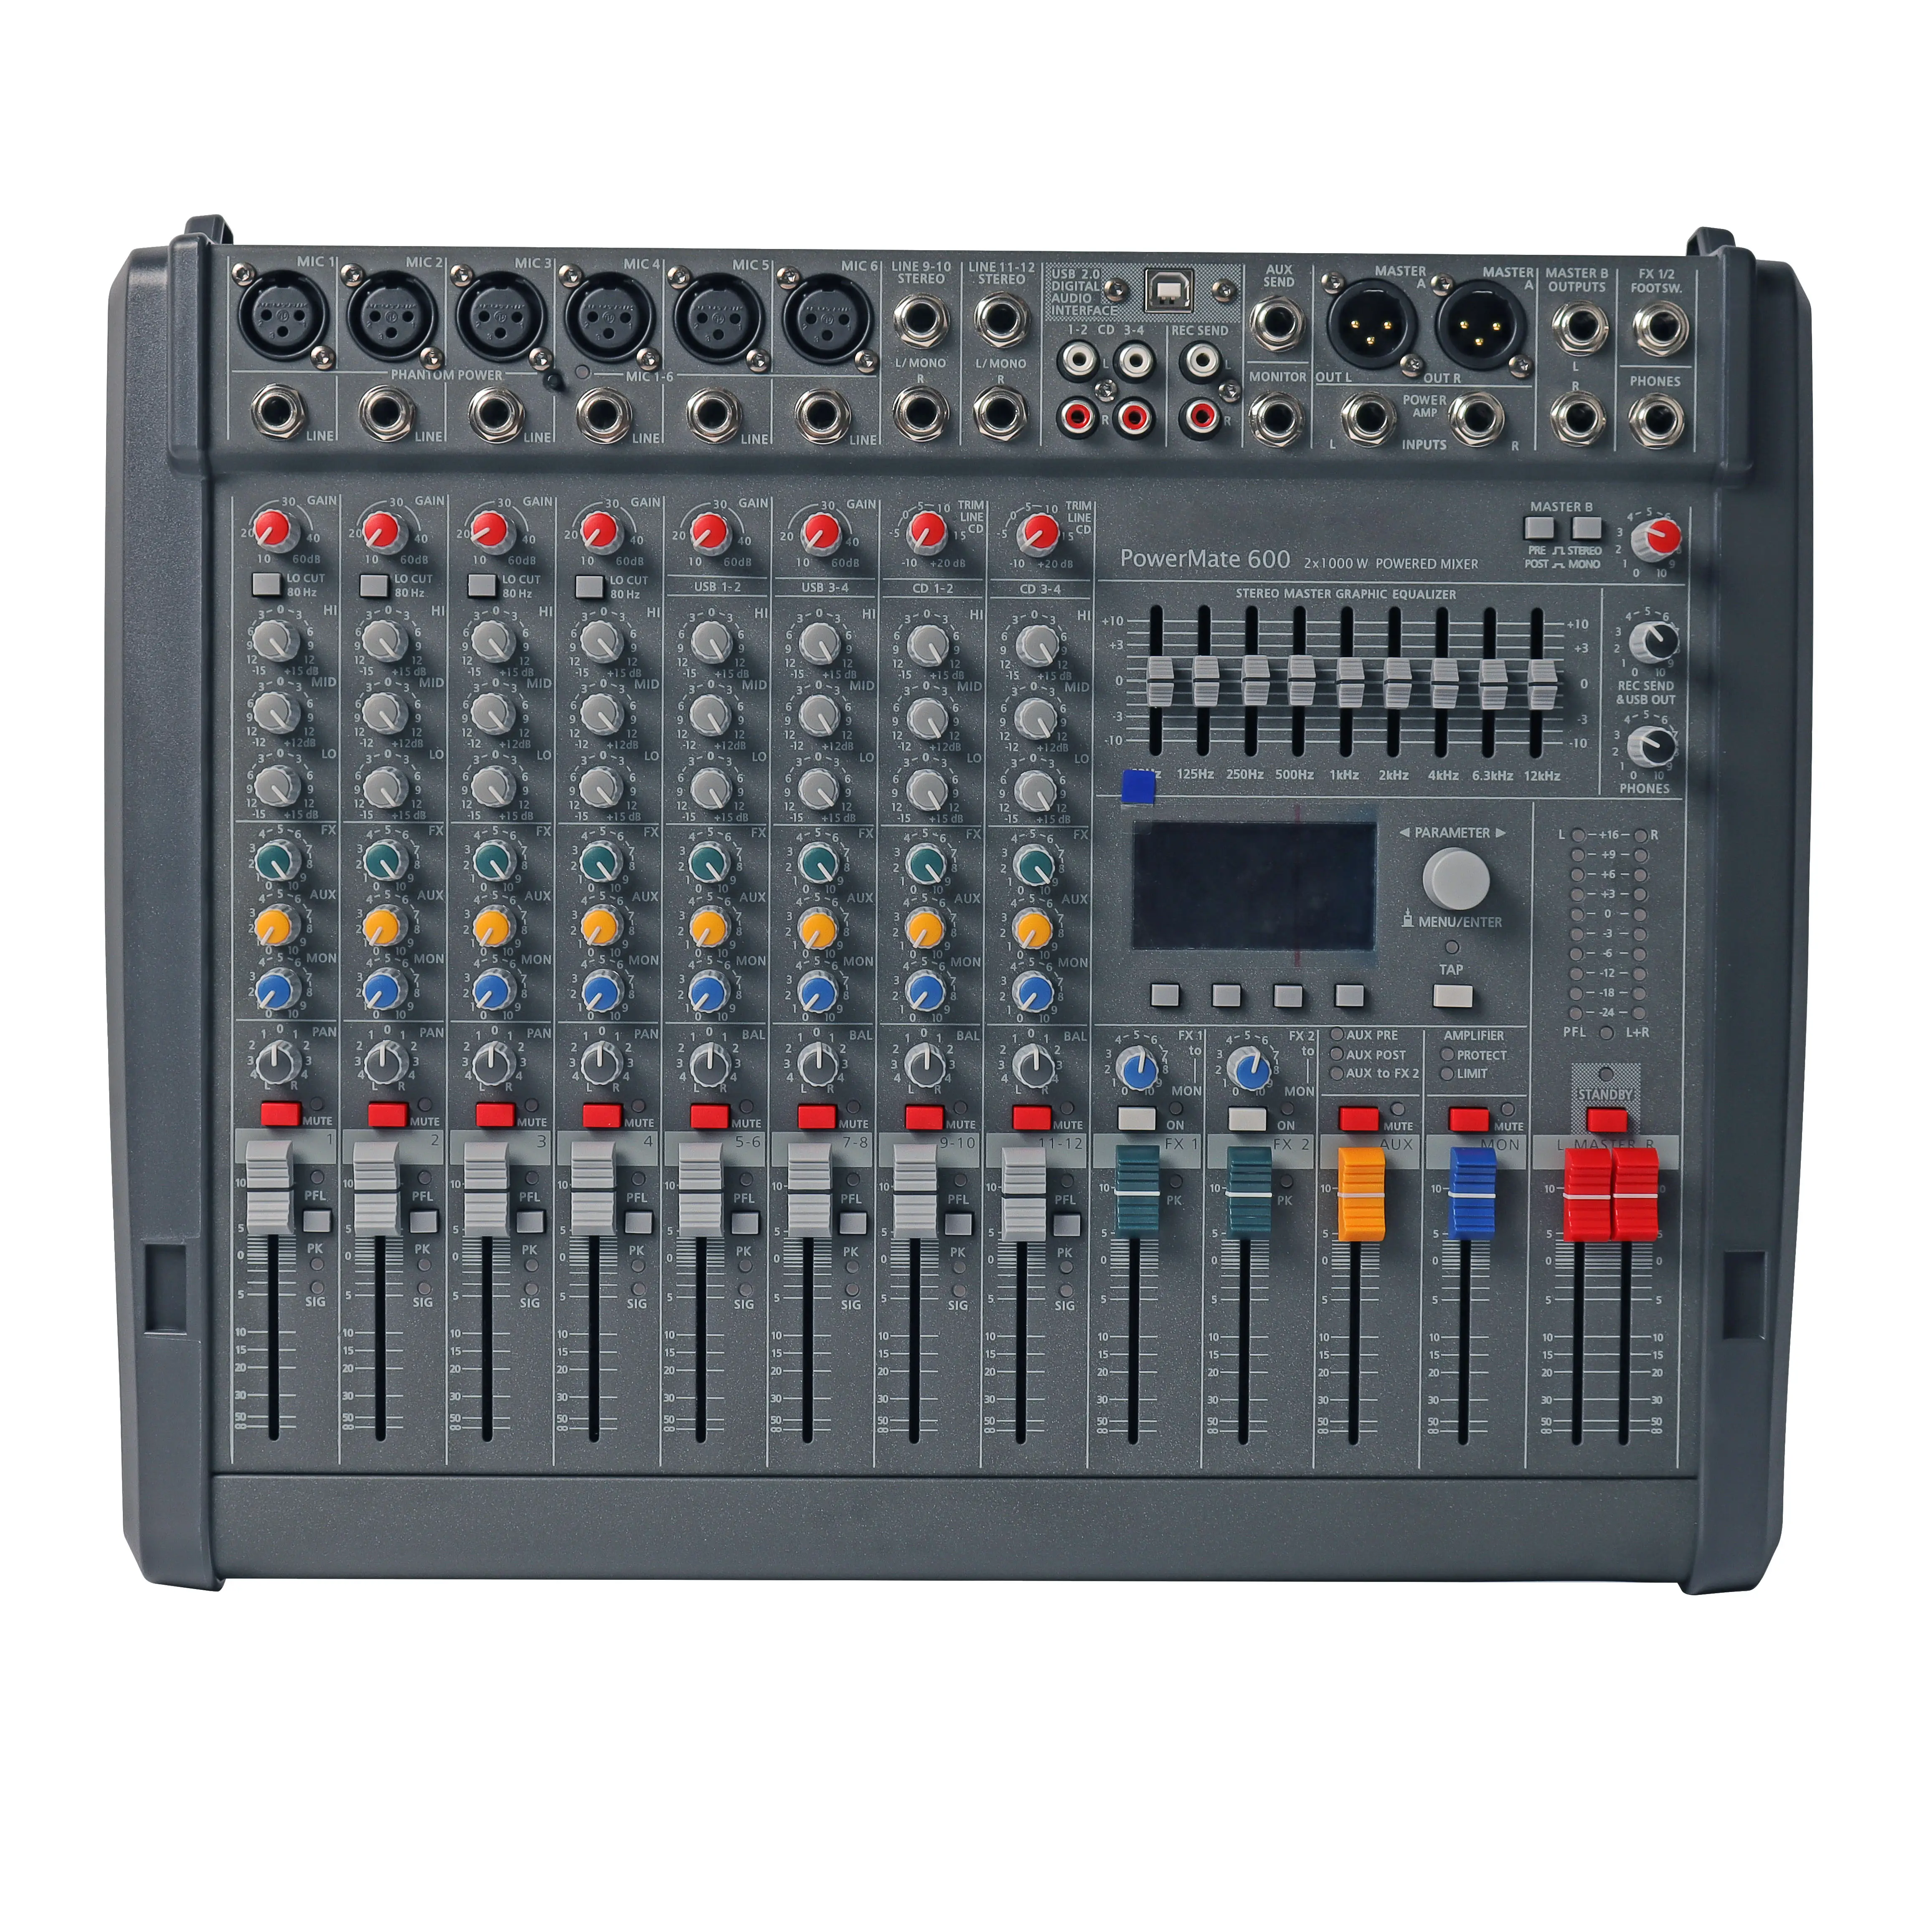 ALTA QUALIDADE E VENDAS DURÁVEIS PARA Novo Desconto PM600-3 DJ Mixer Controller Audio Sound console music mixer dj sound system